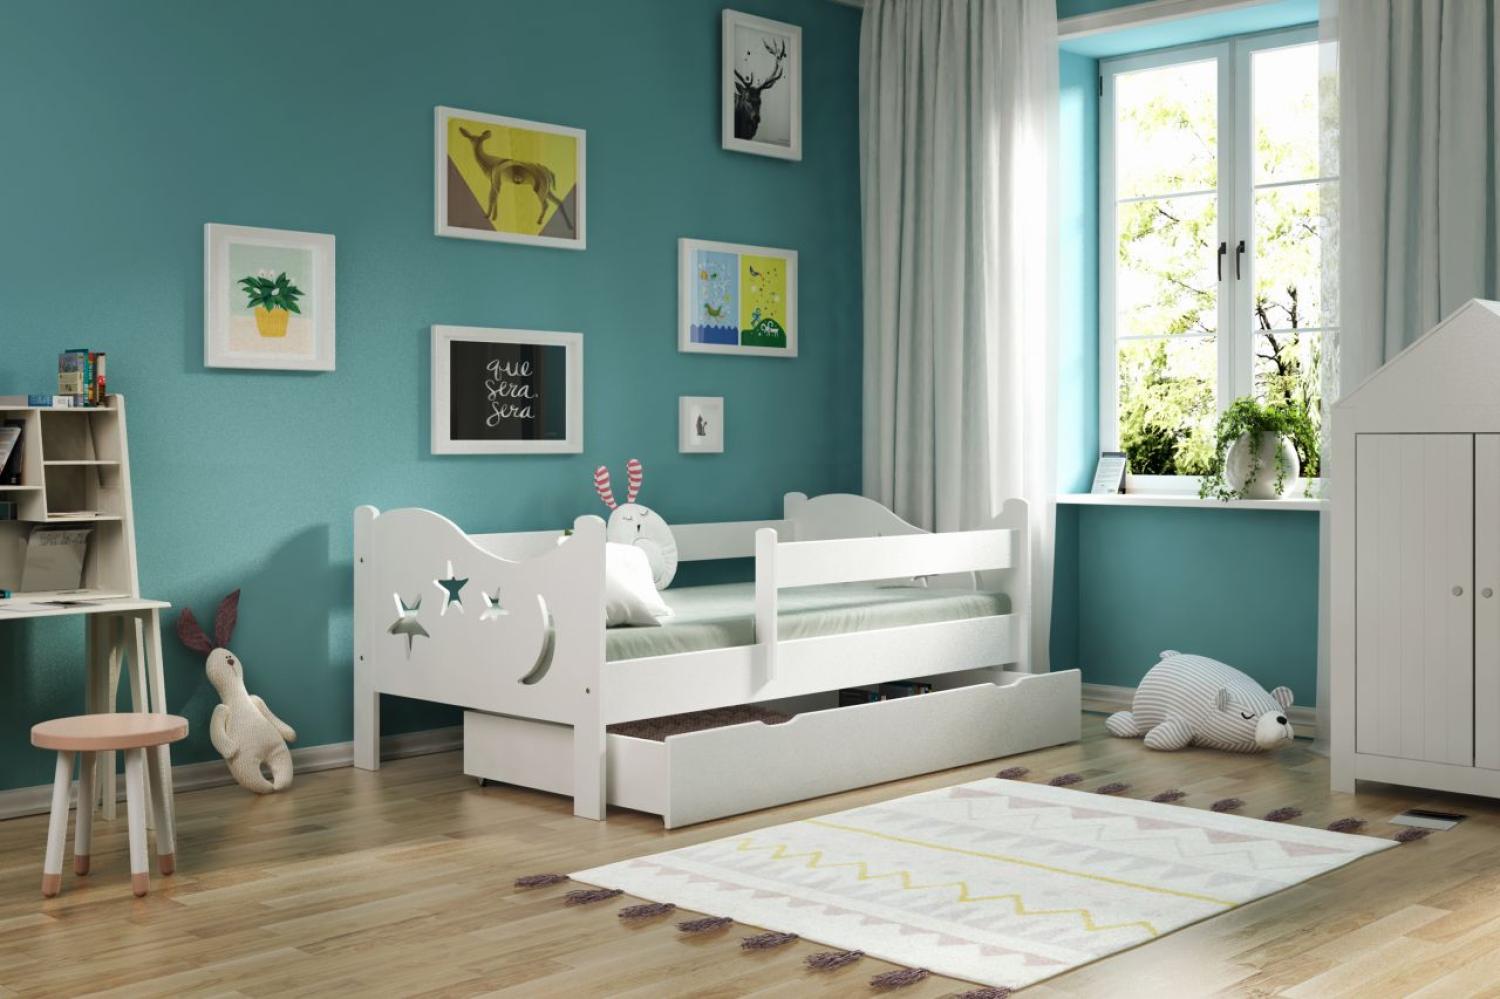 Kinderbettenwelt 'Chrisi' Kinderbett 70x140 cm, Weiß, Kiefer massiv, inkl. Schublade, Lattenrost und Matratze Bild 1